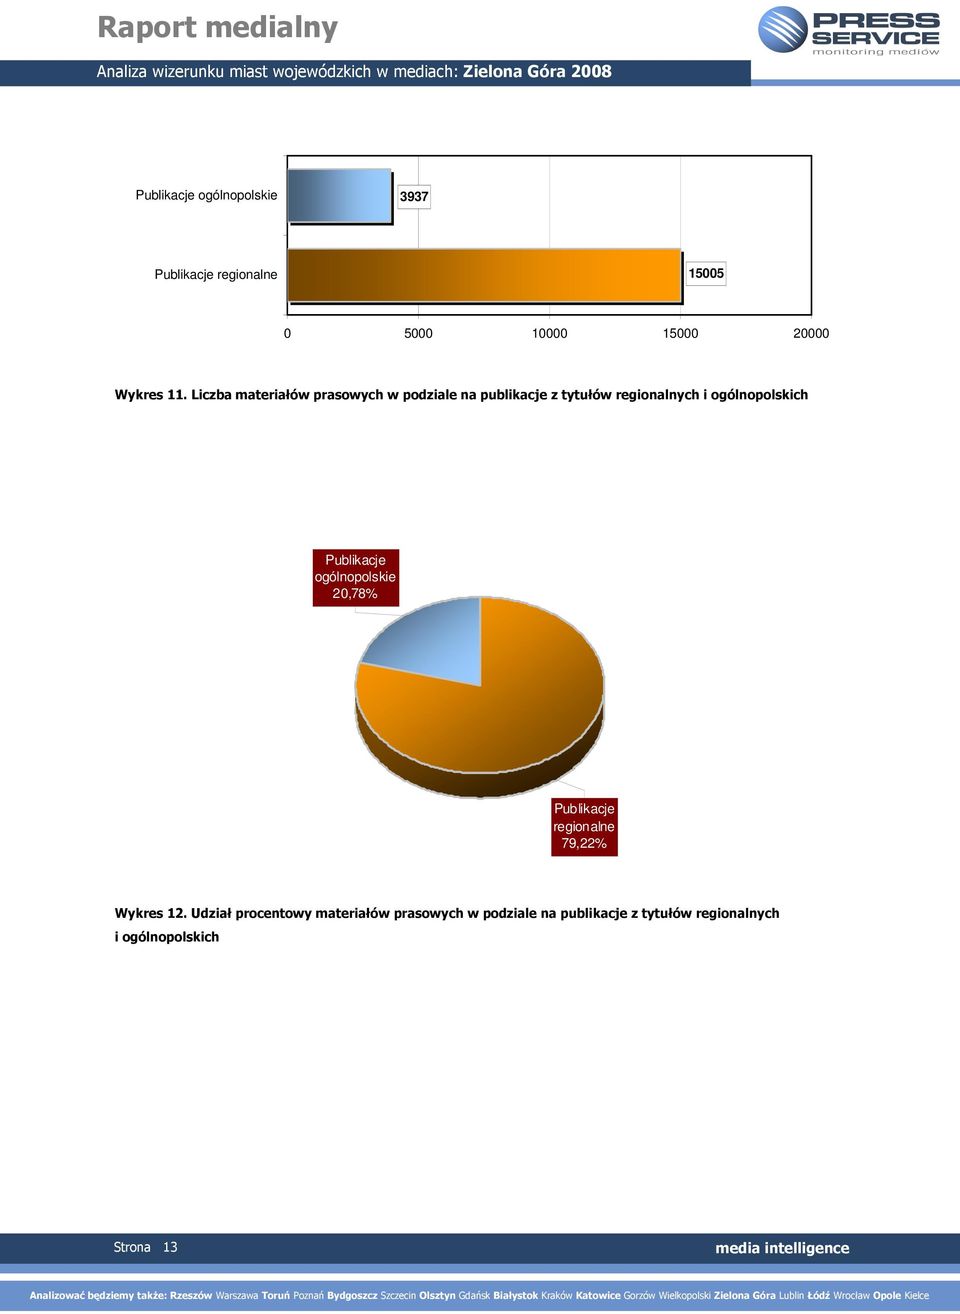 Publikacje ogólnopolskie 20,78% Publikacje regionalne 79,22% Wykres 12.